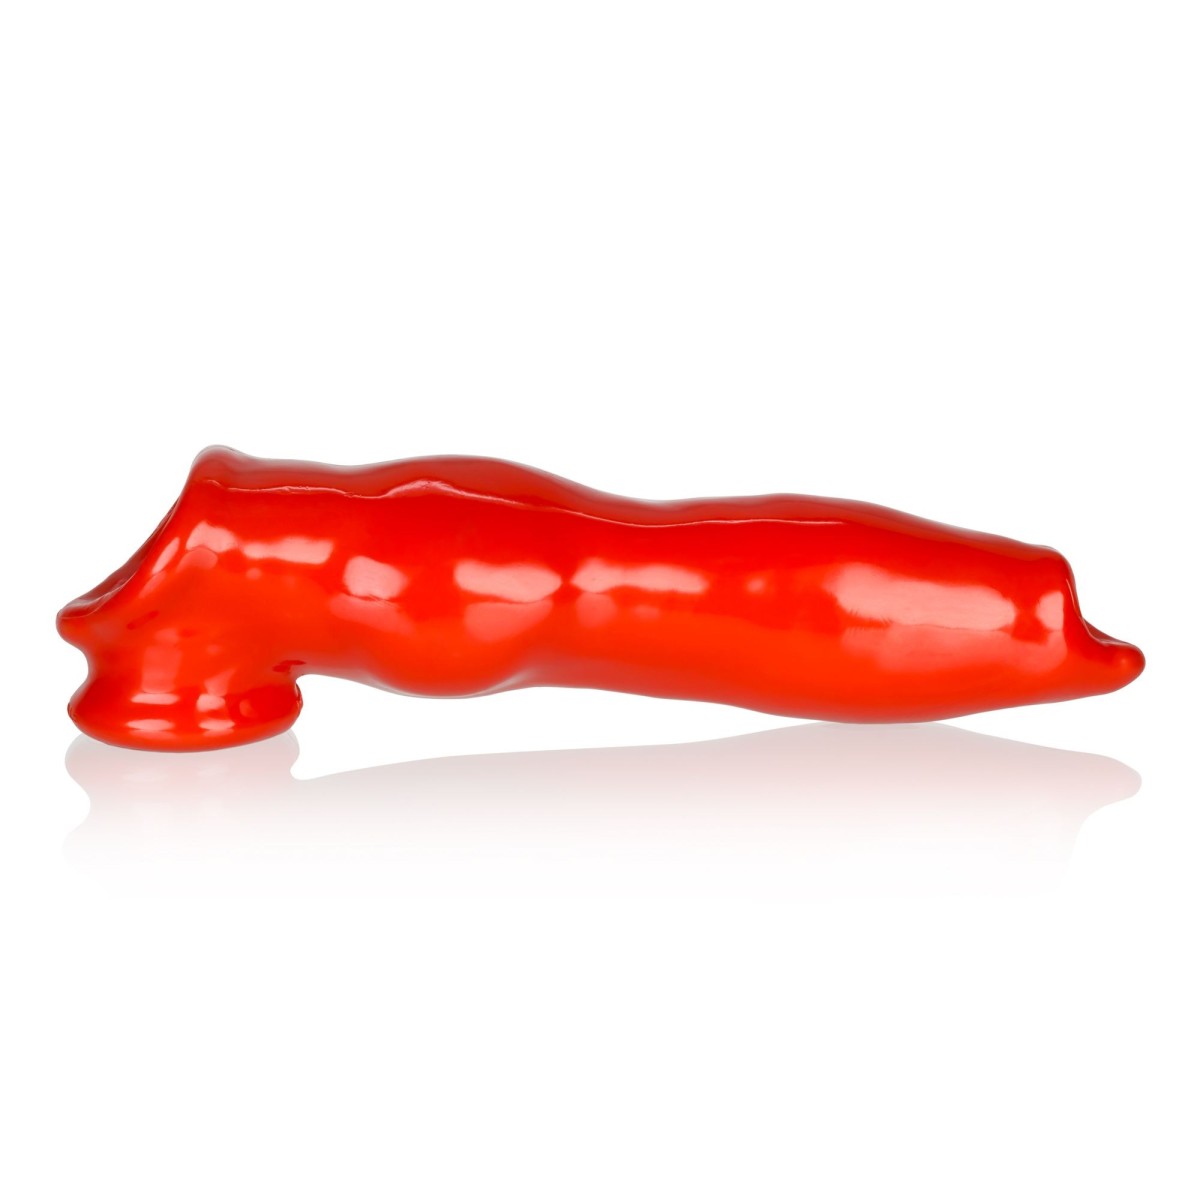 Psí návlek na penis Oxballs Fido červený, návlek na penis ve tvaru psího penisu 22 x 3,5–6,5 cm